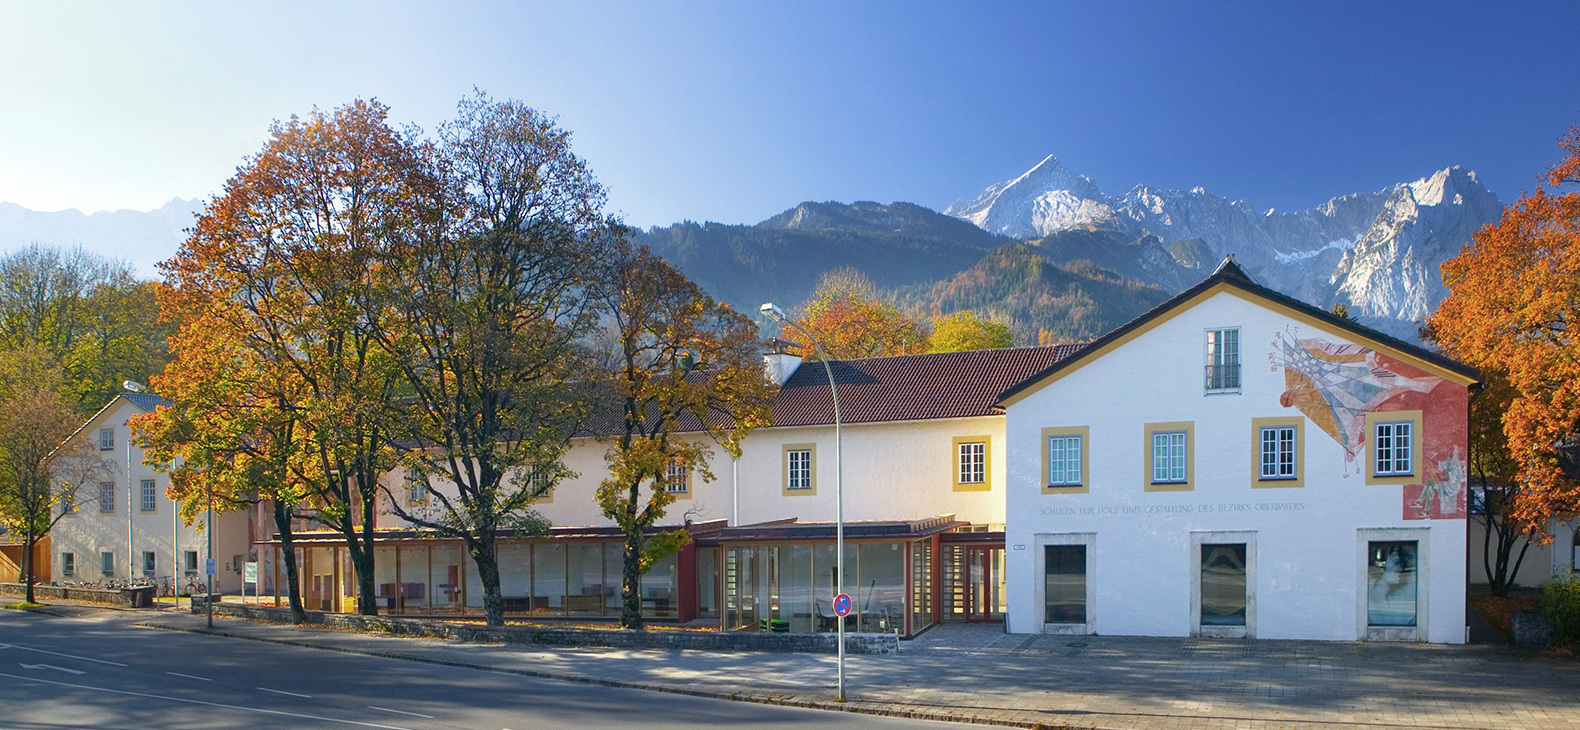 Blick auf die Front des Schulgebäudes an einem sonnigen Wintertag; im Hintergrund die Alpen.